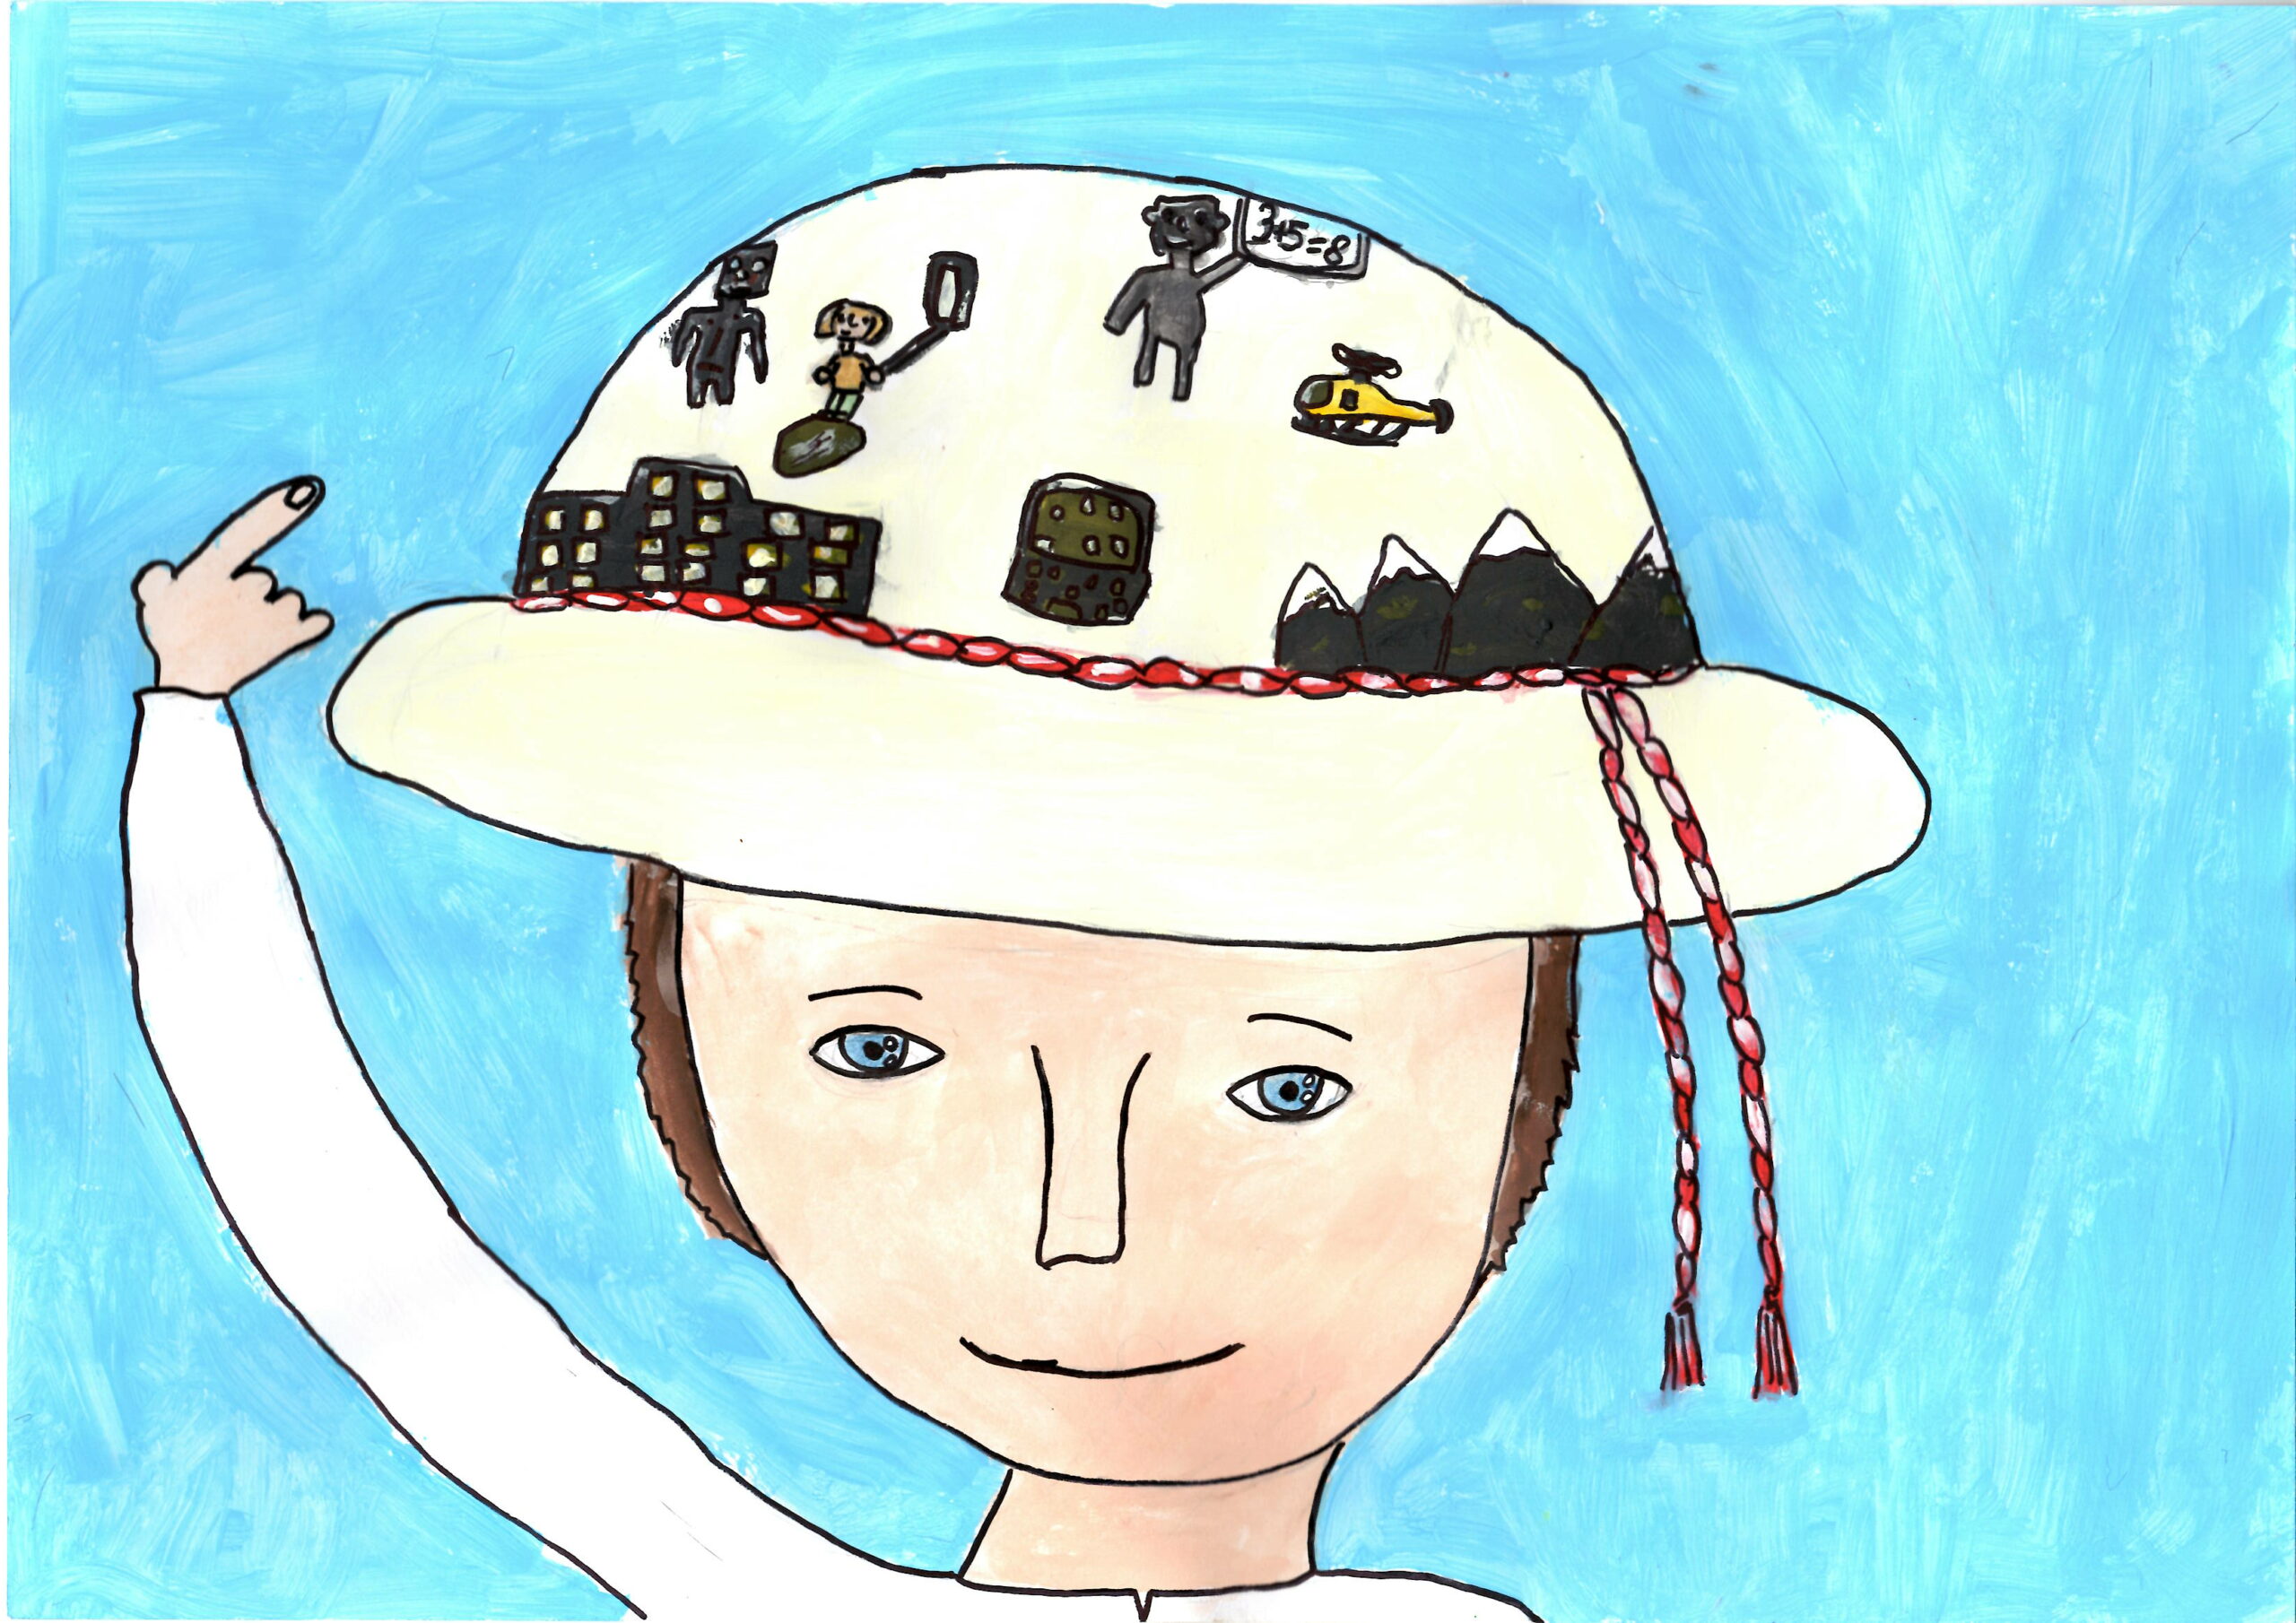 Budoucnost dítěte v horalském klobouku / The future of a child seen in a traditional hat once worn by the locals – Karolina Jochymková